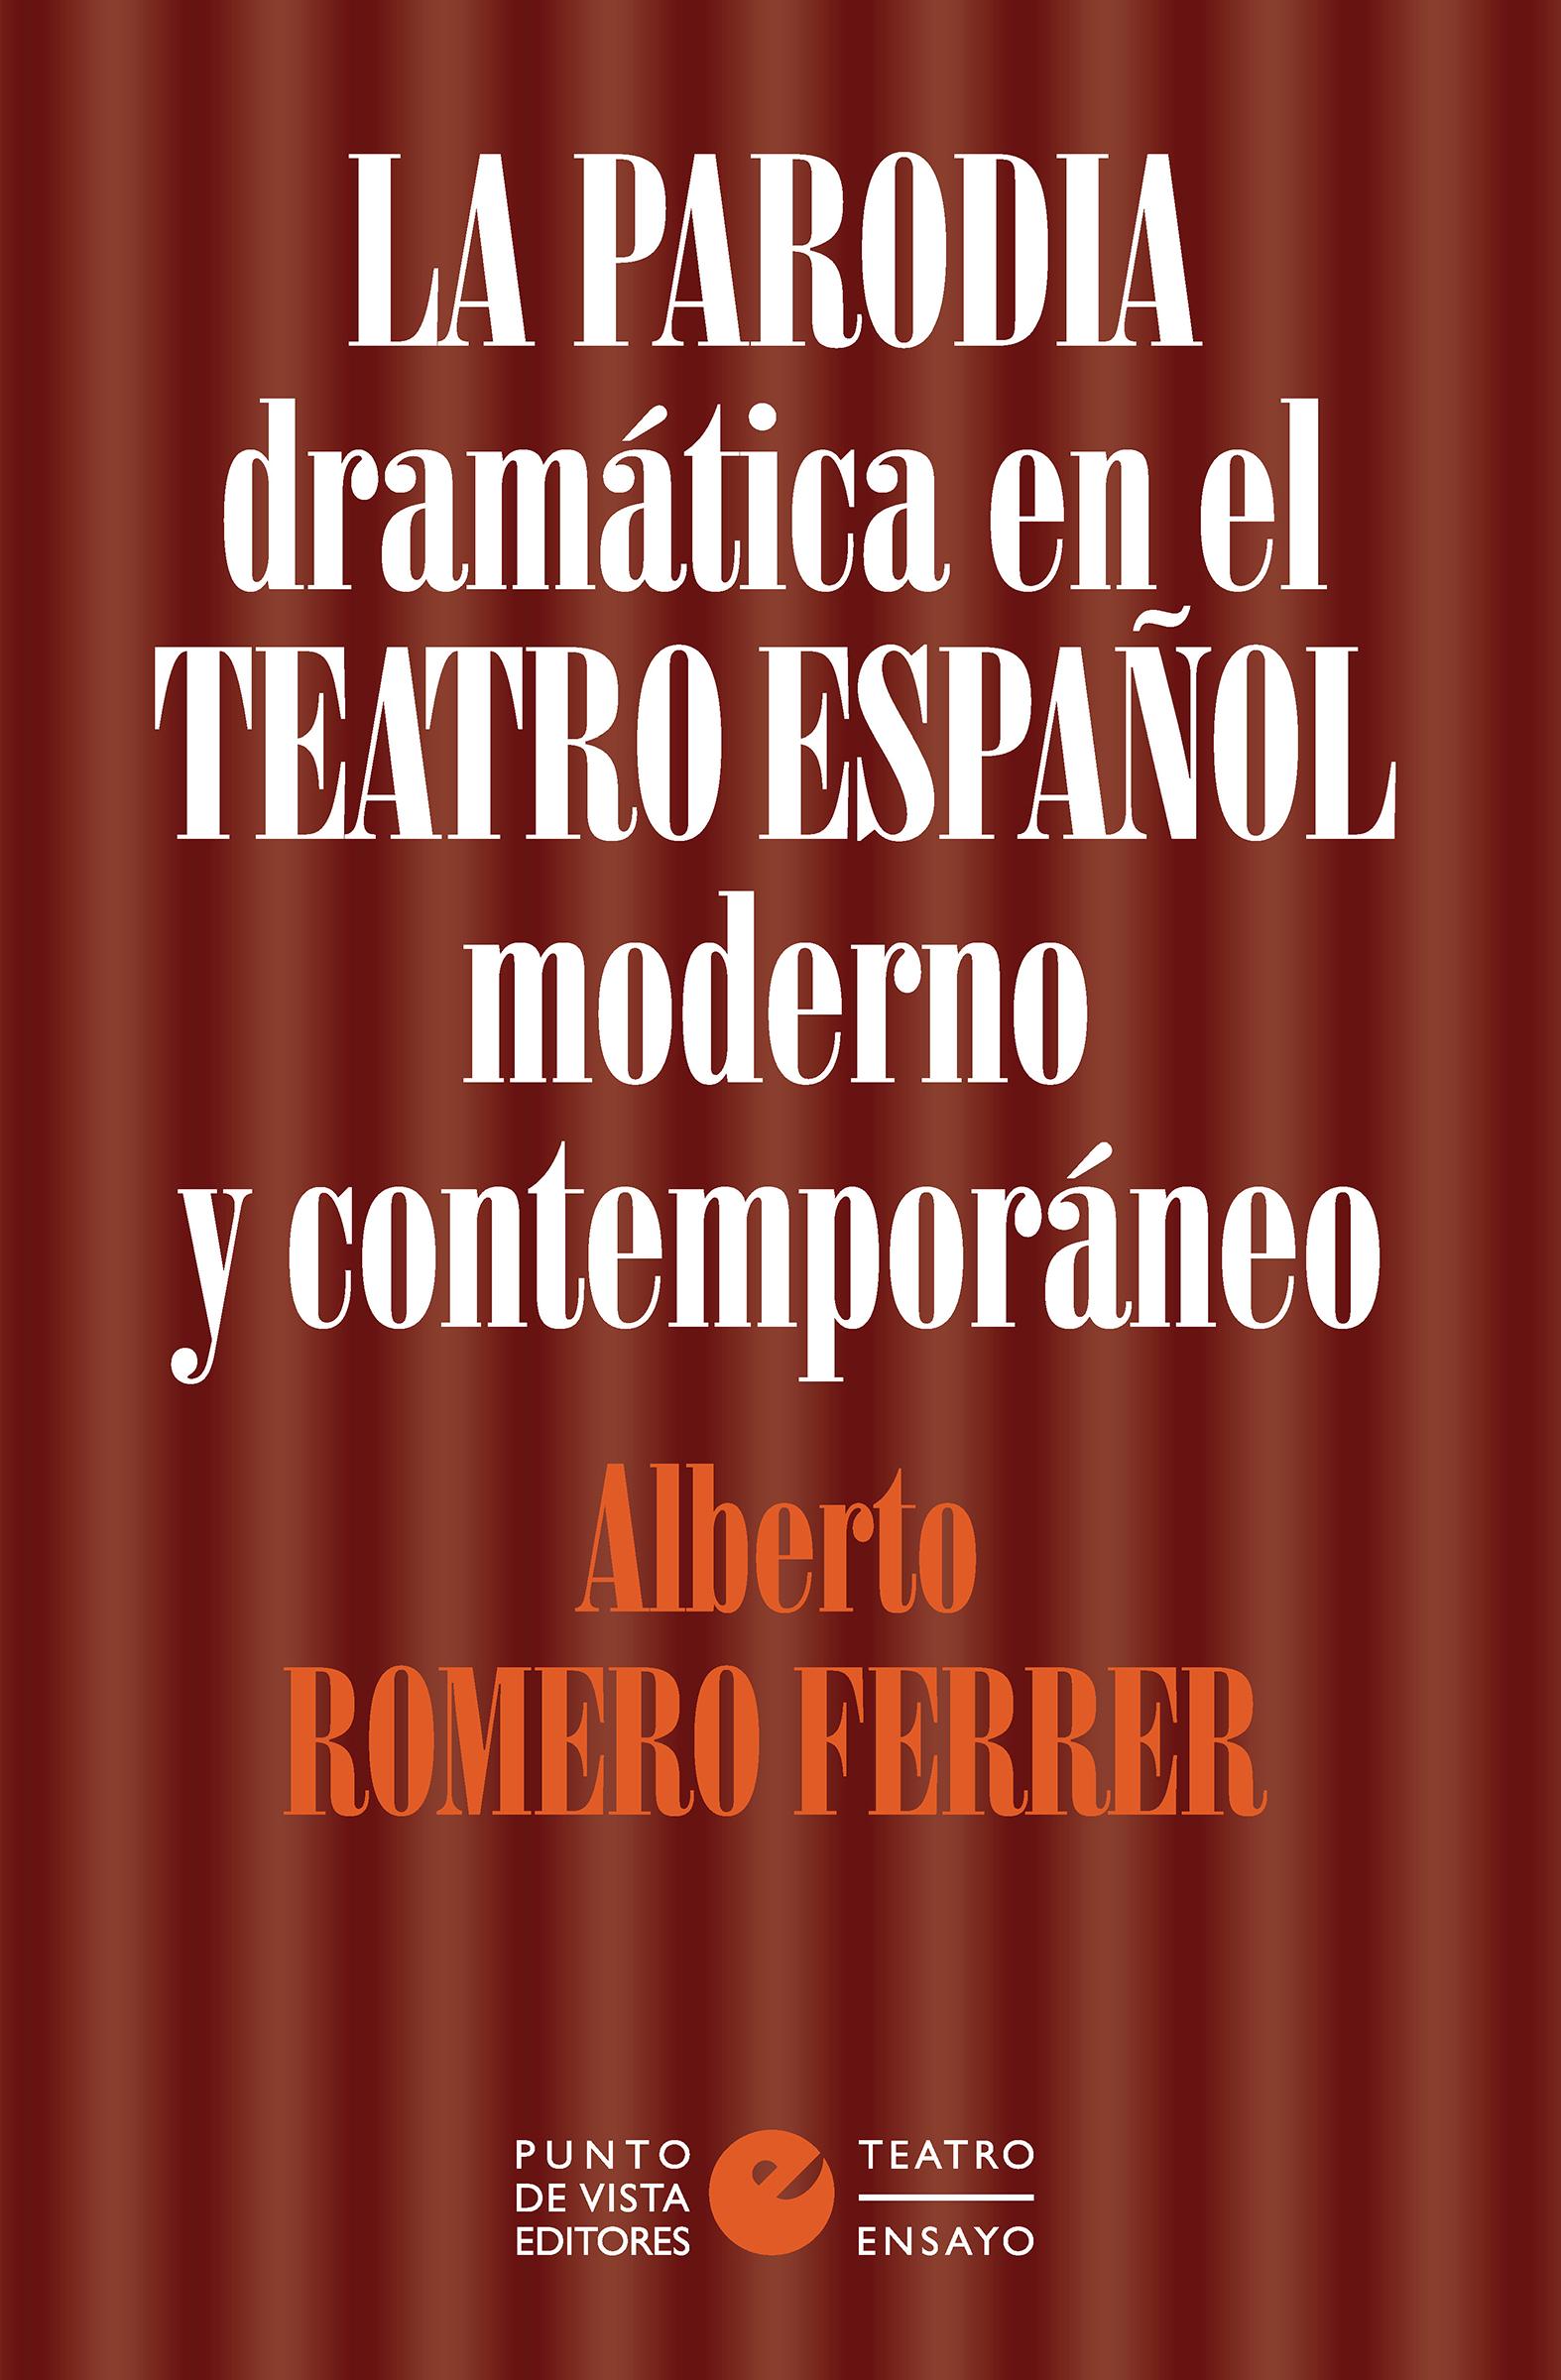 Imagen de portada del libro La parodia dramática en el teatro español moderno y contemporáneo